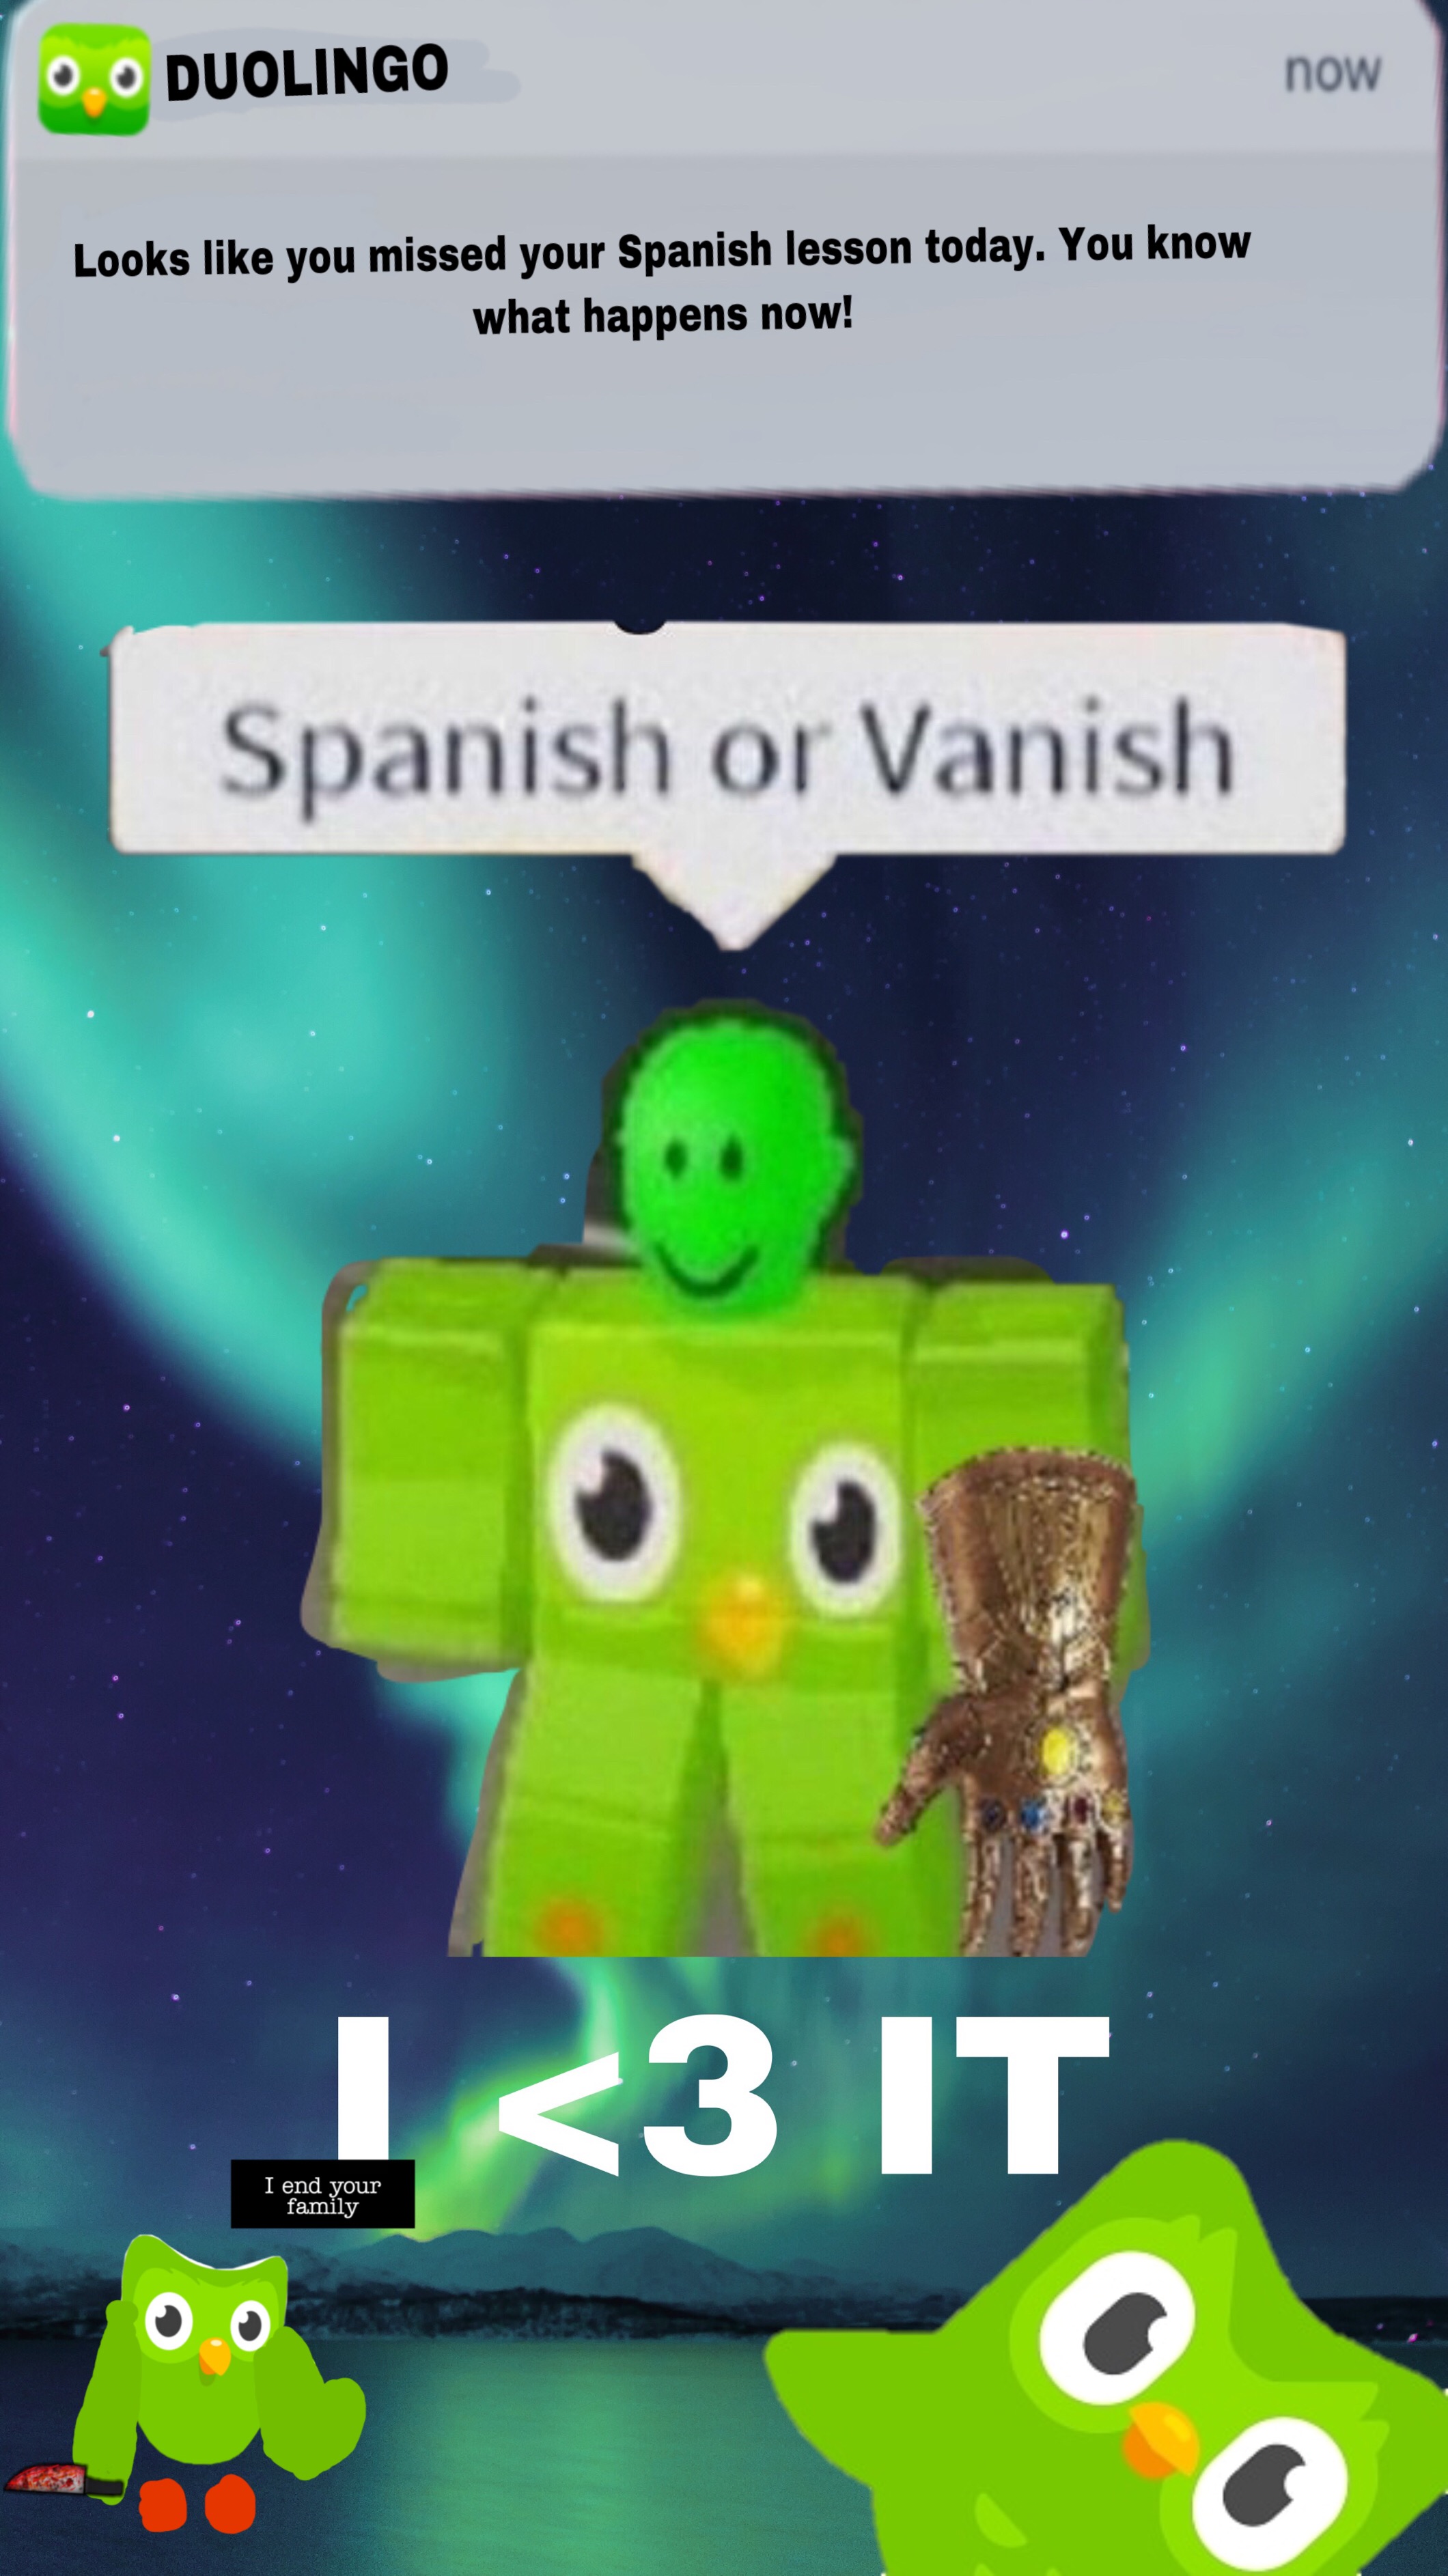 Duolingo Meme Roblox Image By Uxu - roblox spanish or vanish